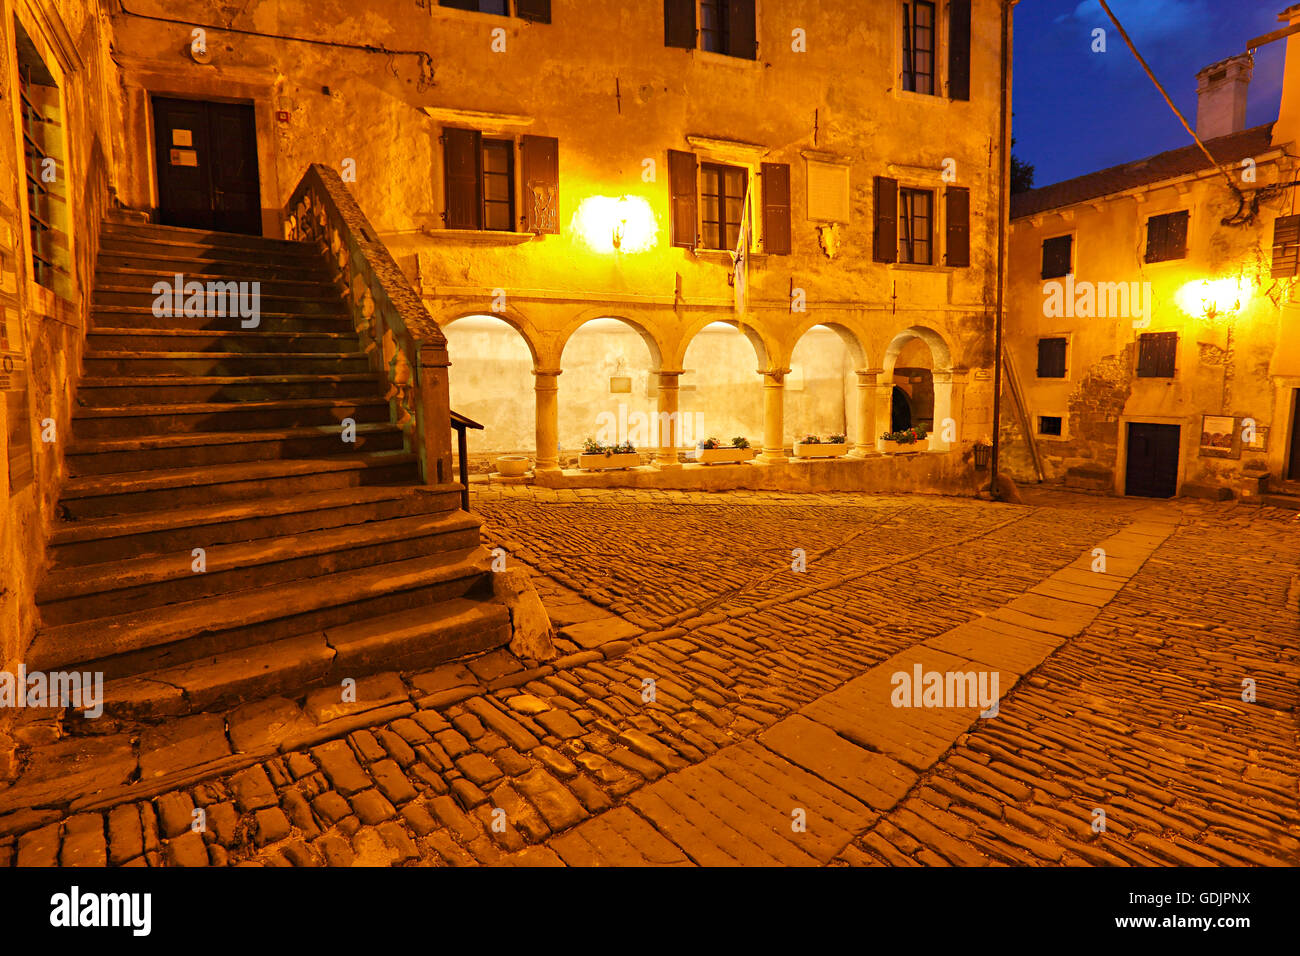 Groznjan town in the night, Croatia Stock Photo